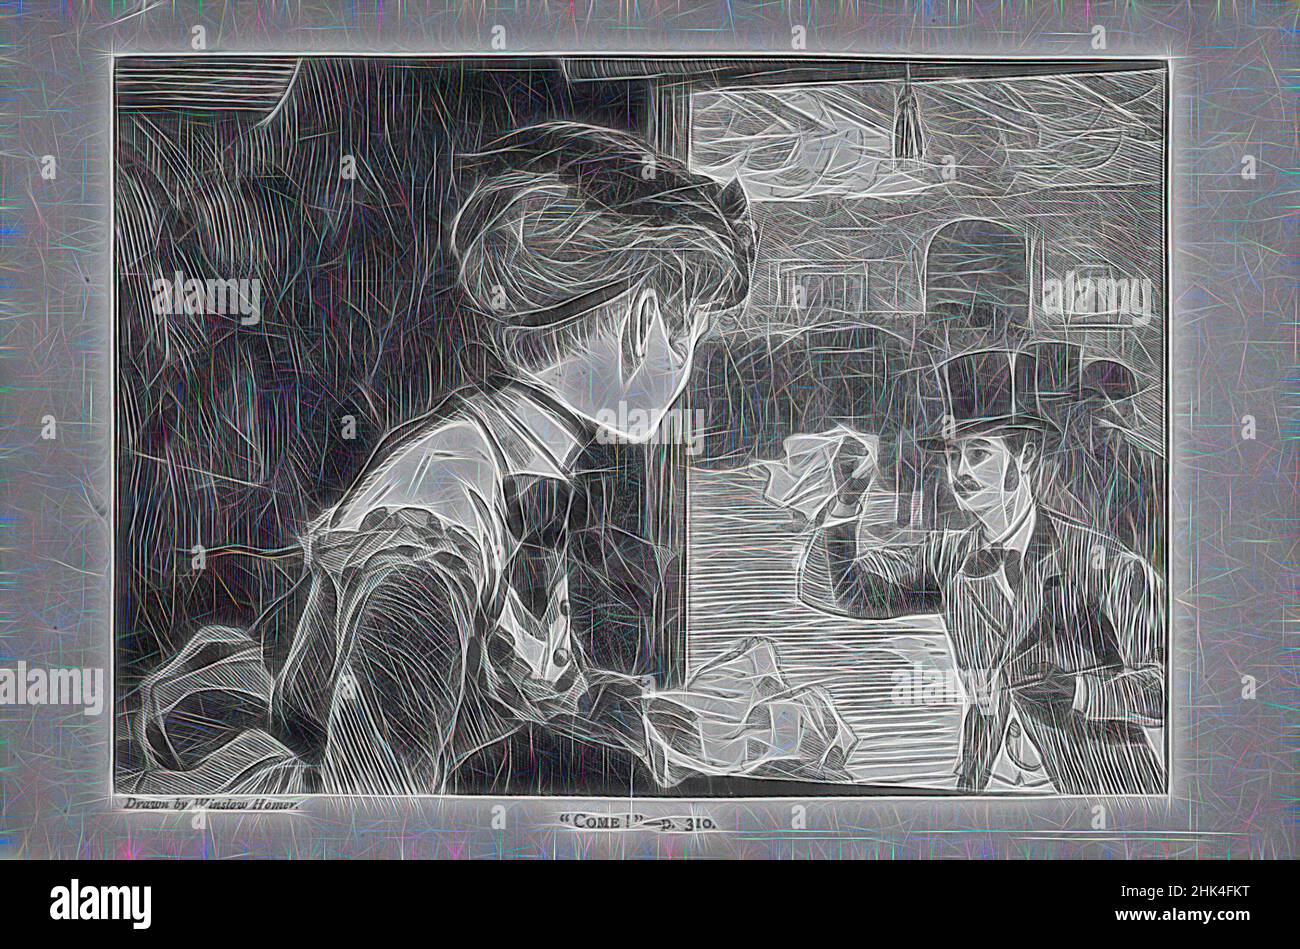 Inspiriert von Come!', Winslow Homer, Amerikaner, 1836-1910, Holzstich, 1869, Bild: 4 7/8 x 6 7/8 Zoll, 12,4 x 17,5 cm, neu gestaltet von Artotop. Klassische Kunst neu erfunden mit einem modernen Twist. Design von warmen fröhlichen Leuchten der Helligkeit und Lichtstrahl Strahlkraft. Fotografie inspiriert von Surrealismus und Futurismus, umarmt dynamische Energie der modernen Technologie, Bewegung, Geschwindigkeit und Kultur zu revolutionieren Stockfoto